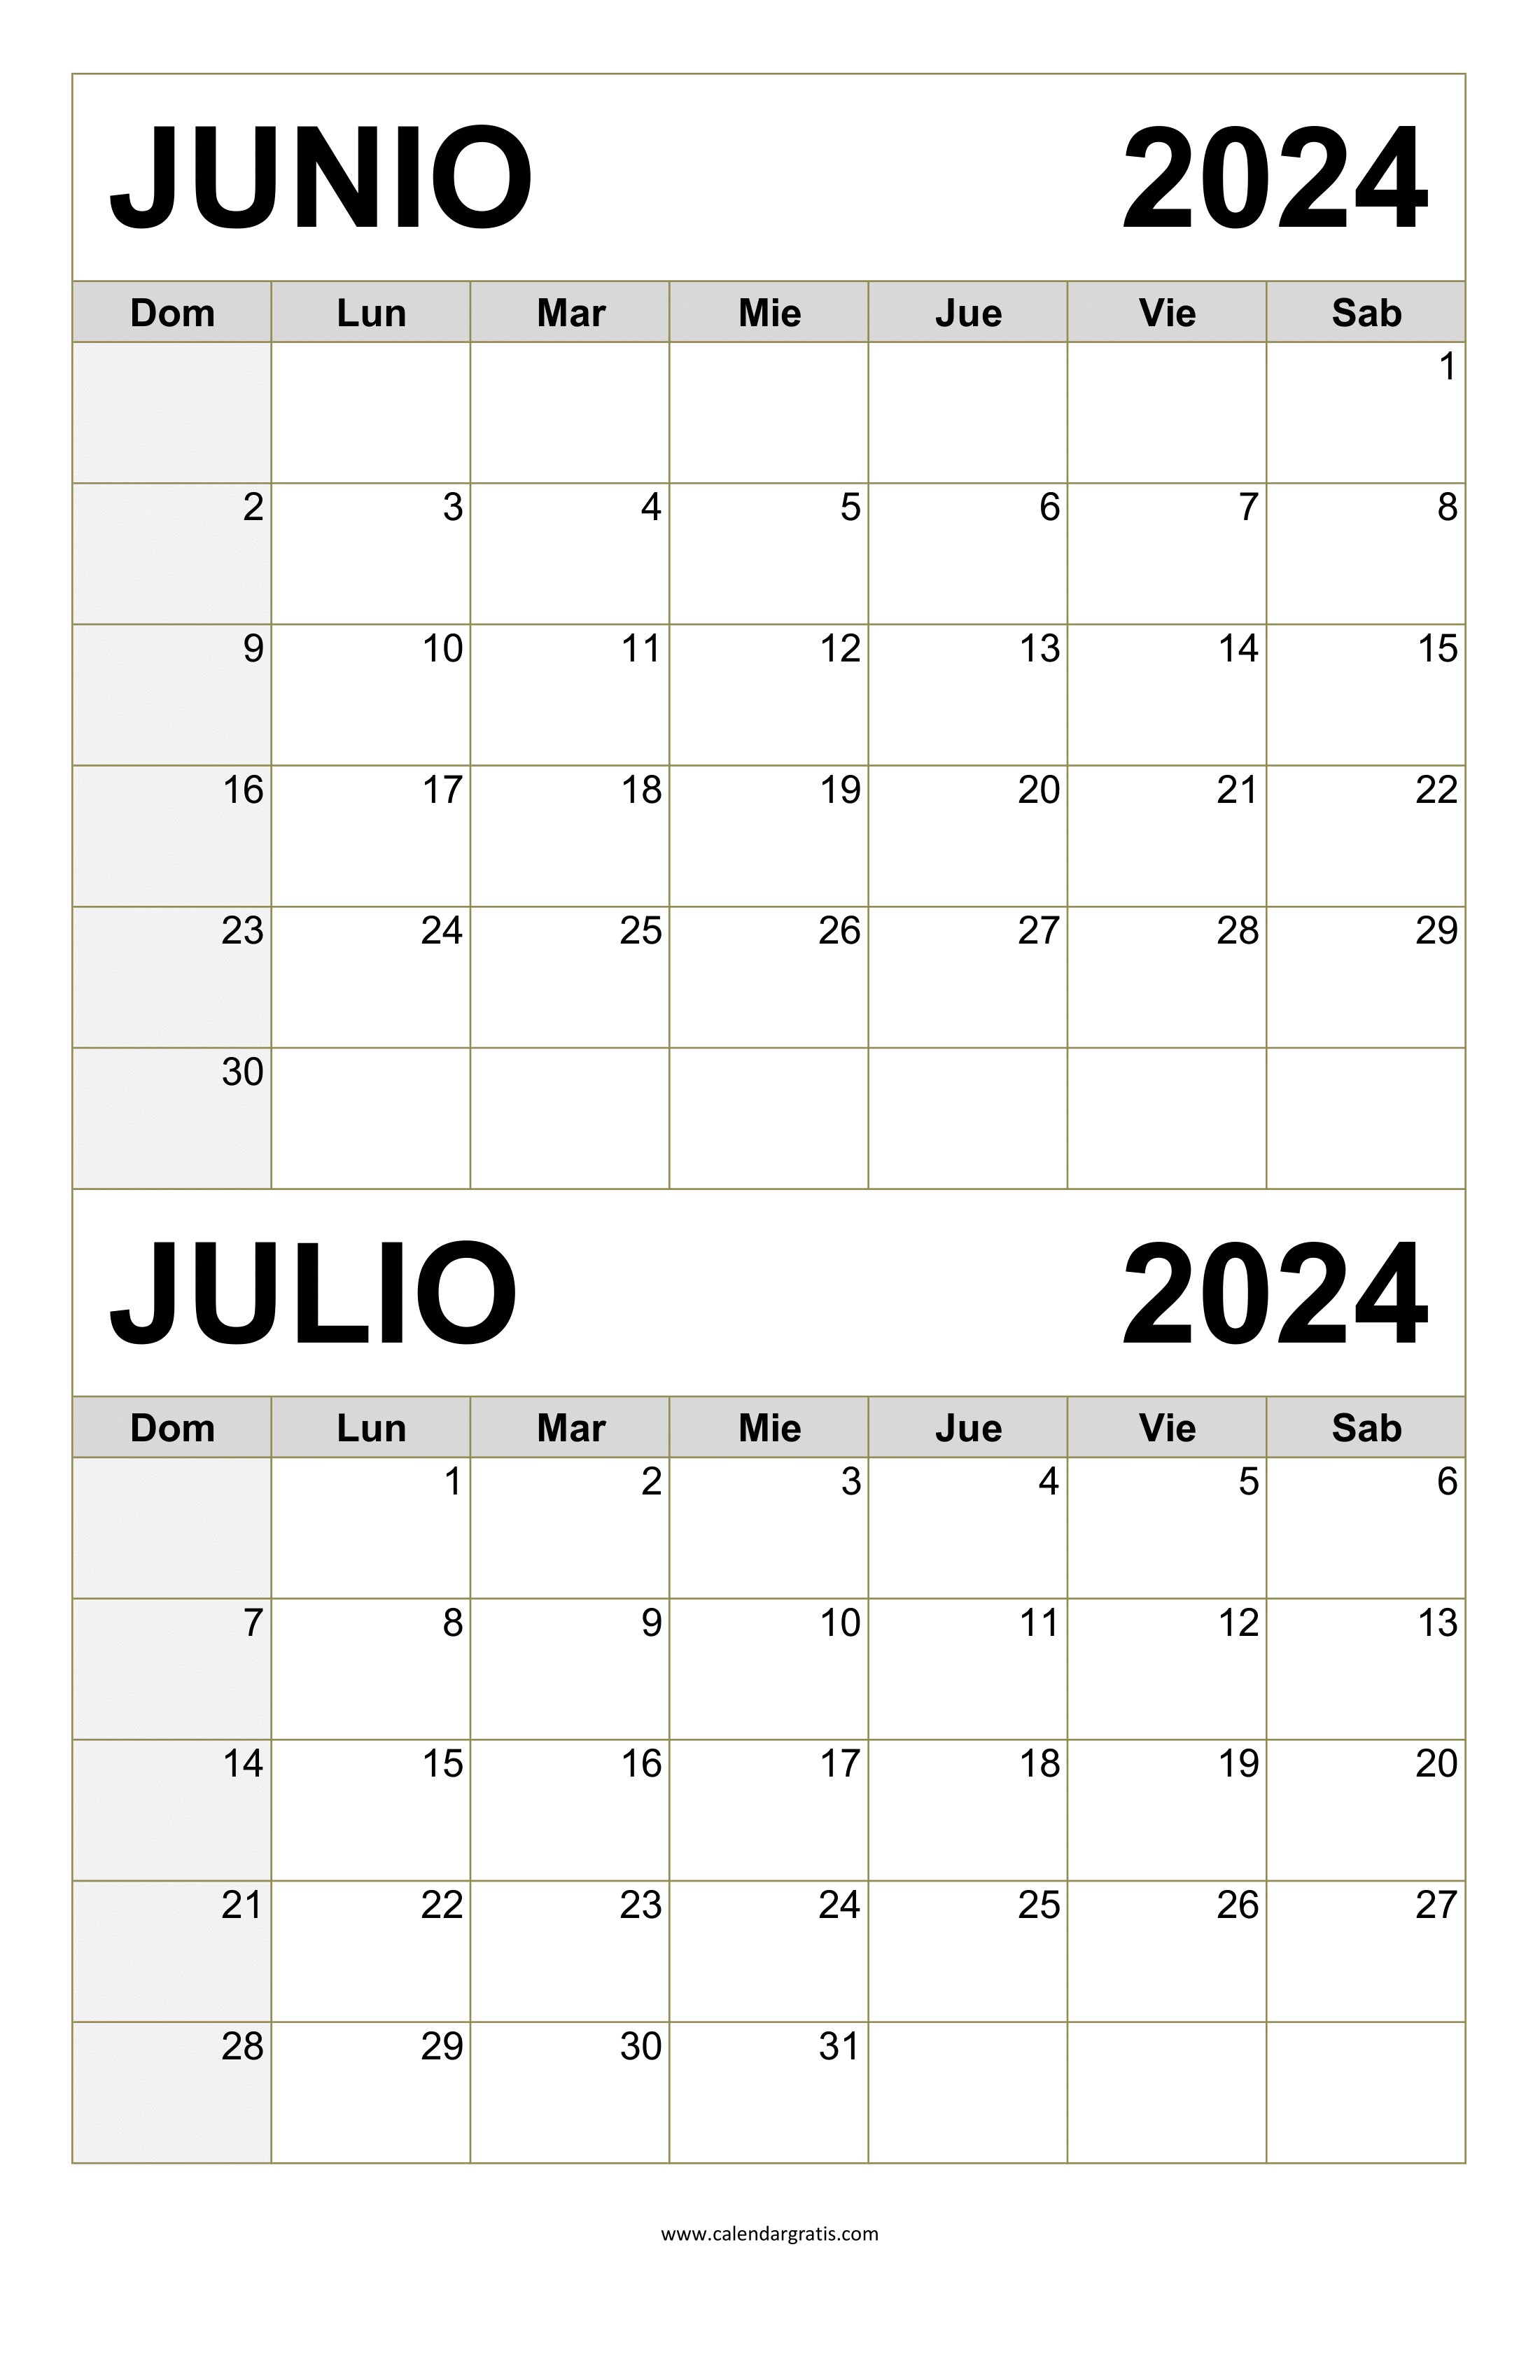 Calendario Junio y Julio 2024 Gratis